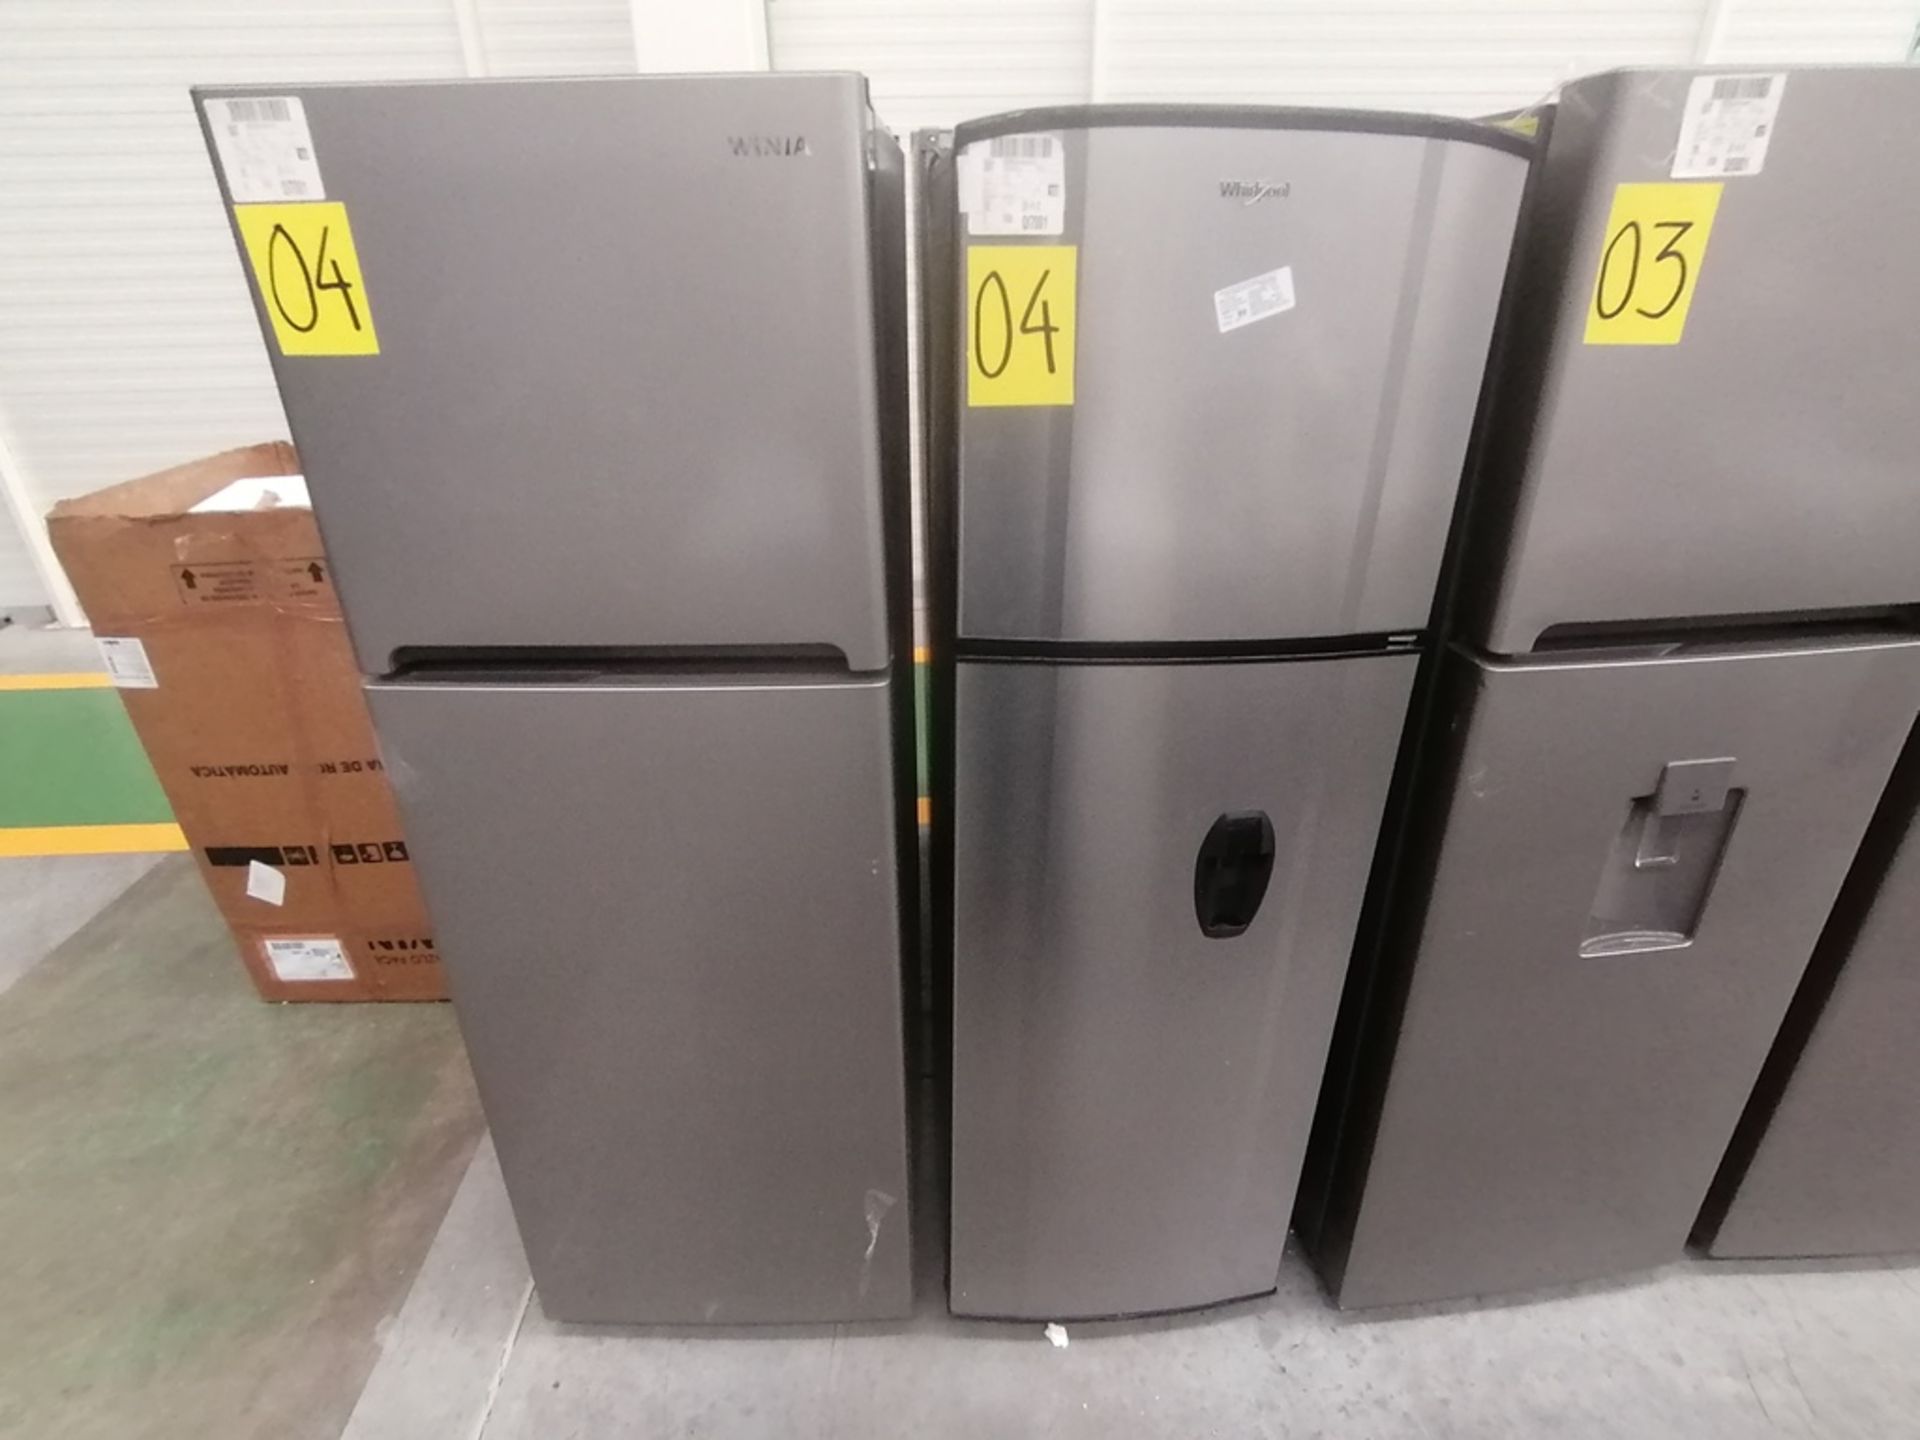 Lote de 2 refrigeradores incluye: 1 Refrigerador con dispensador de agua, Marca Whirlpool, Modelo W - Image 4 of 15